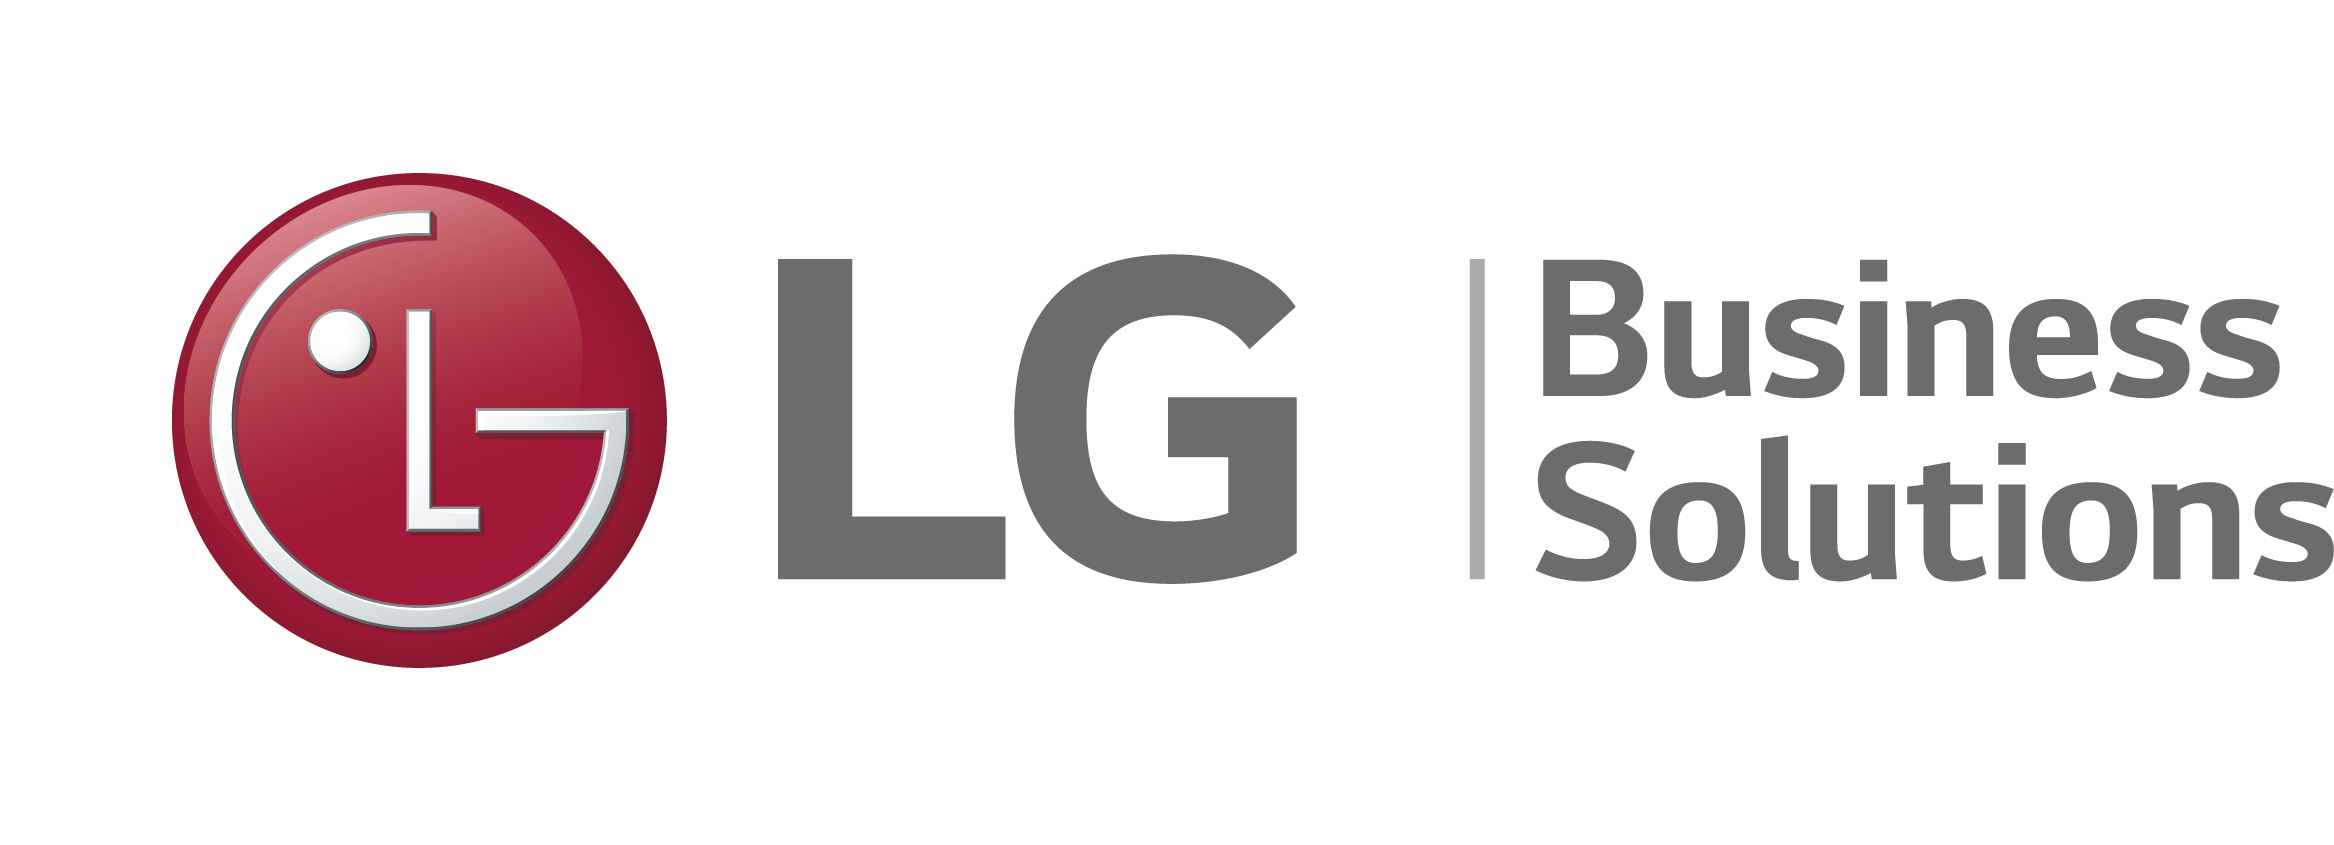 LG Electronics Ltd